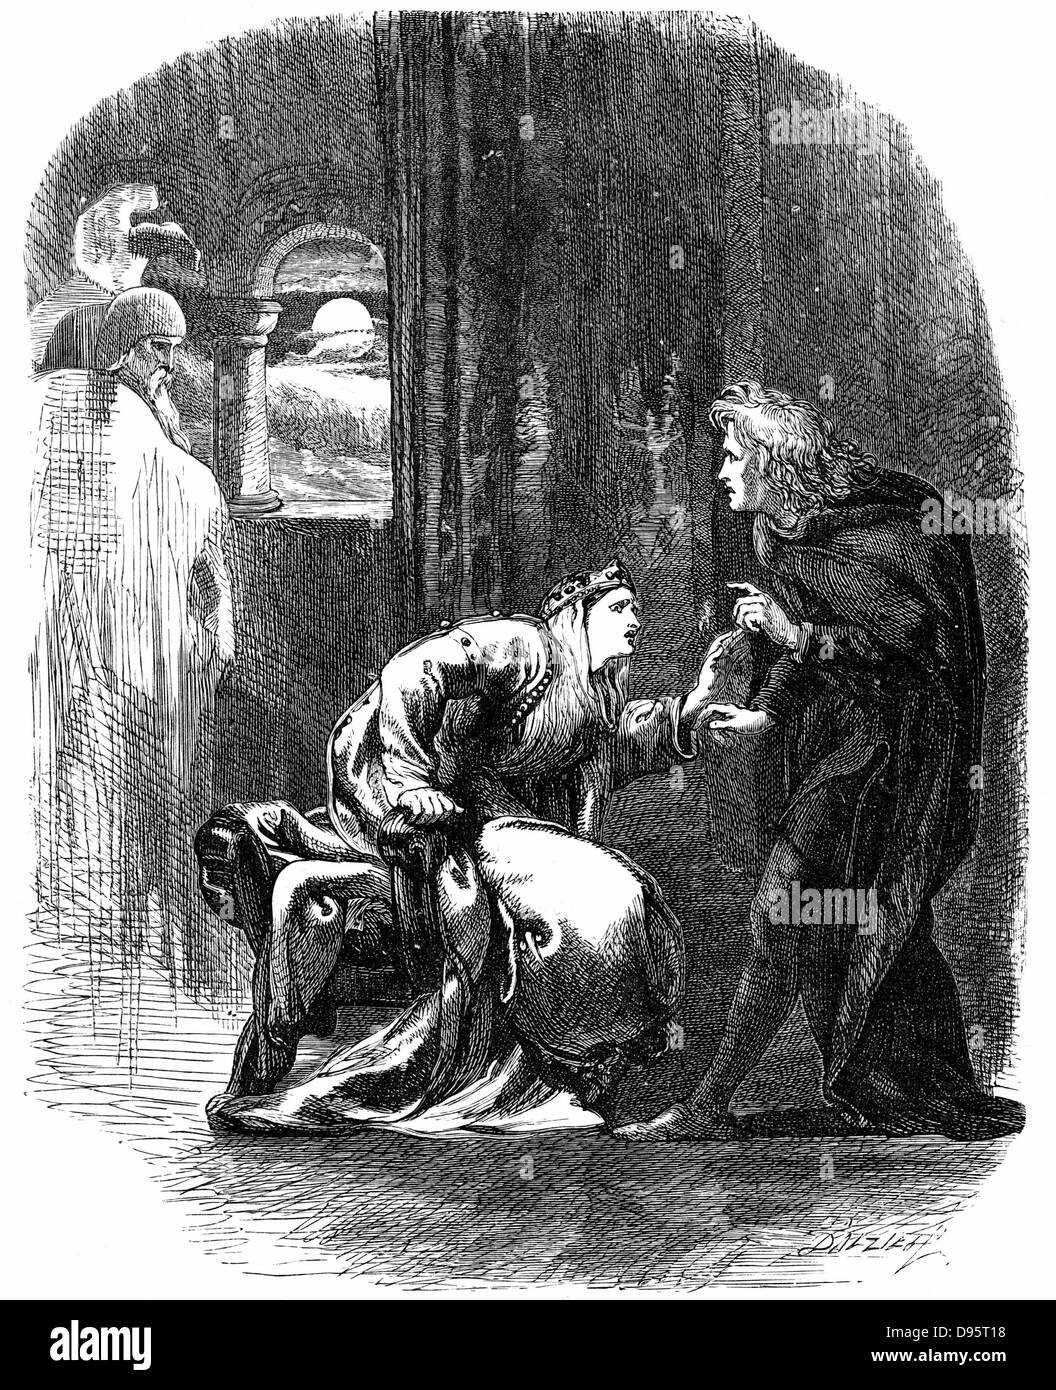 Shakespeares 'Hamlet' Akt 3 Sc 4. Geist von Hamlets Vater zu ihm, um ihn daran zu erinnern, dass er Rache muss auf seine Mutter und seinen Onkel für ihren Verrat. 19. jahrhundert Gravur. Stockfoto